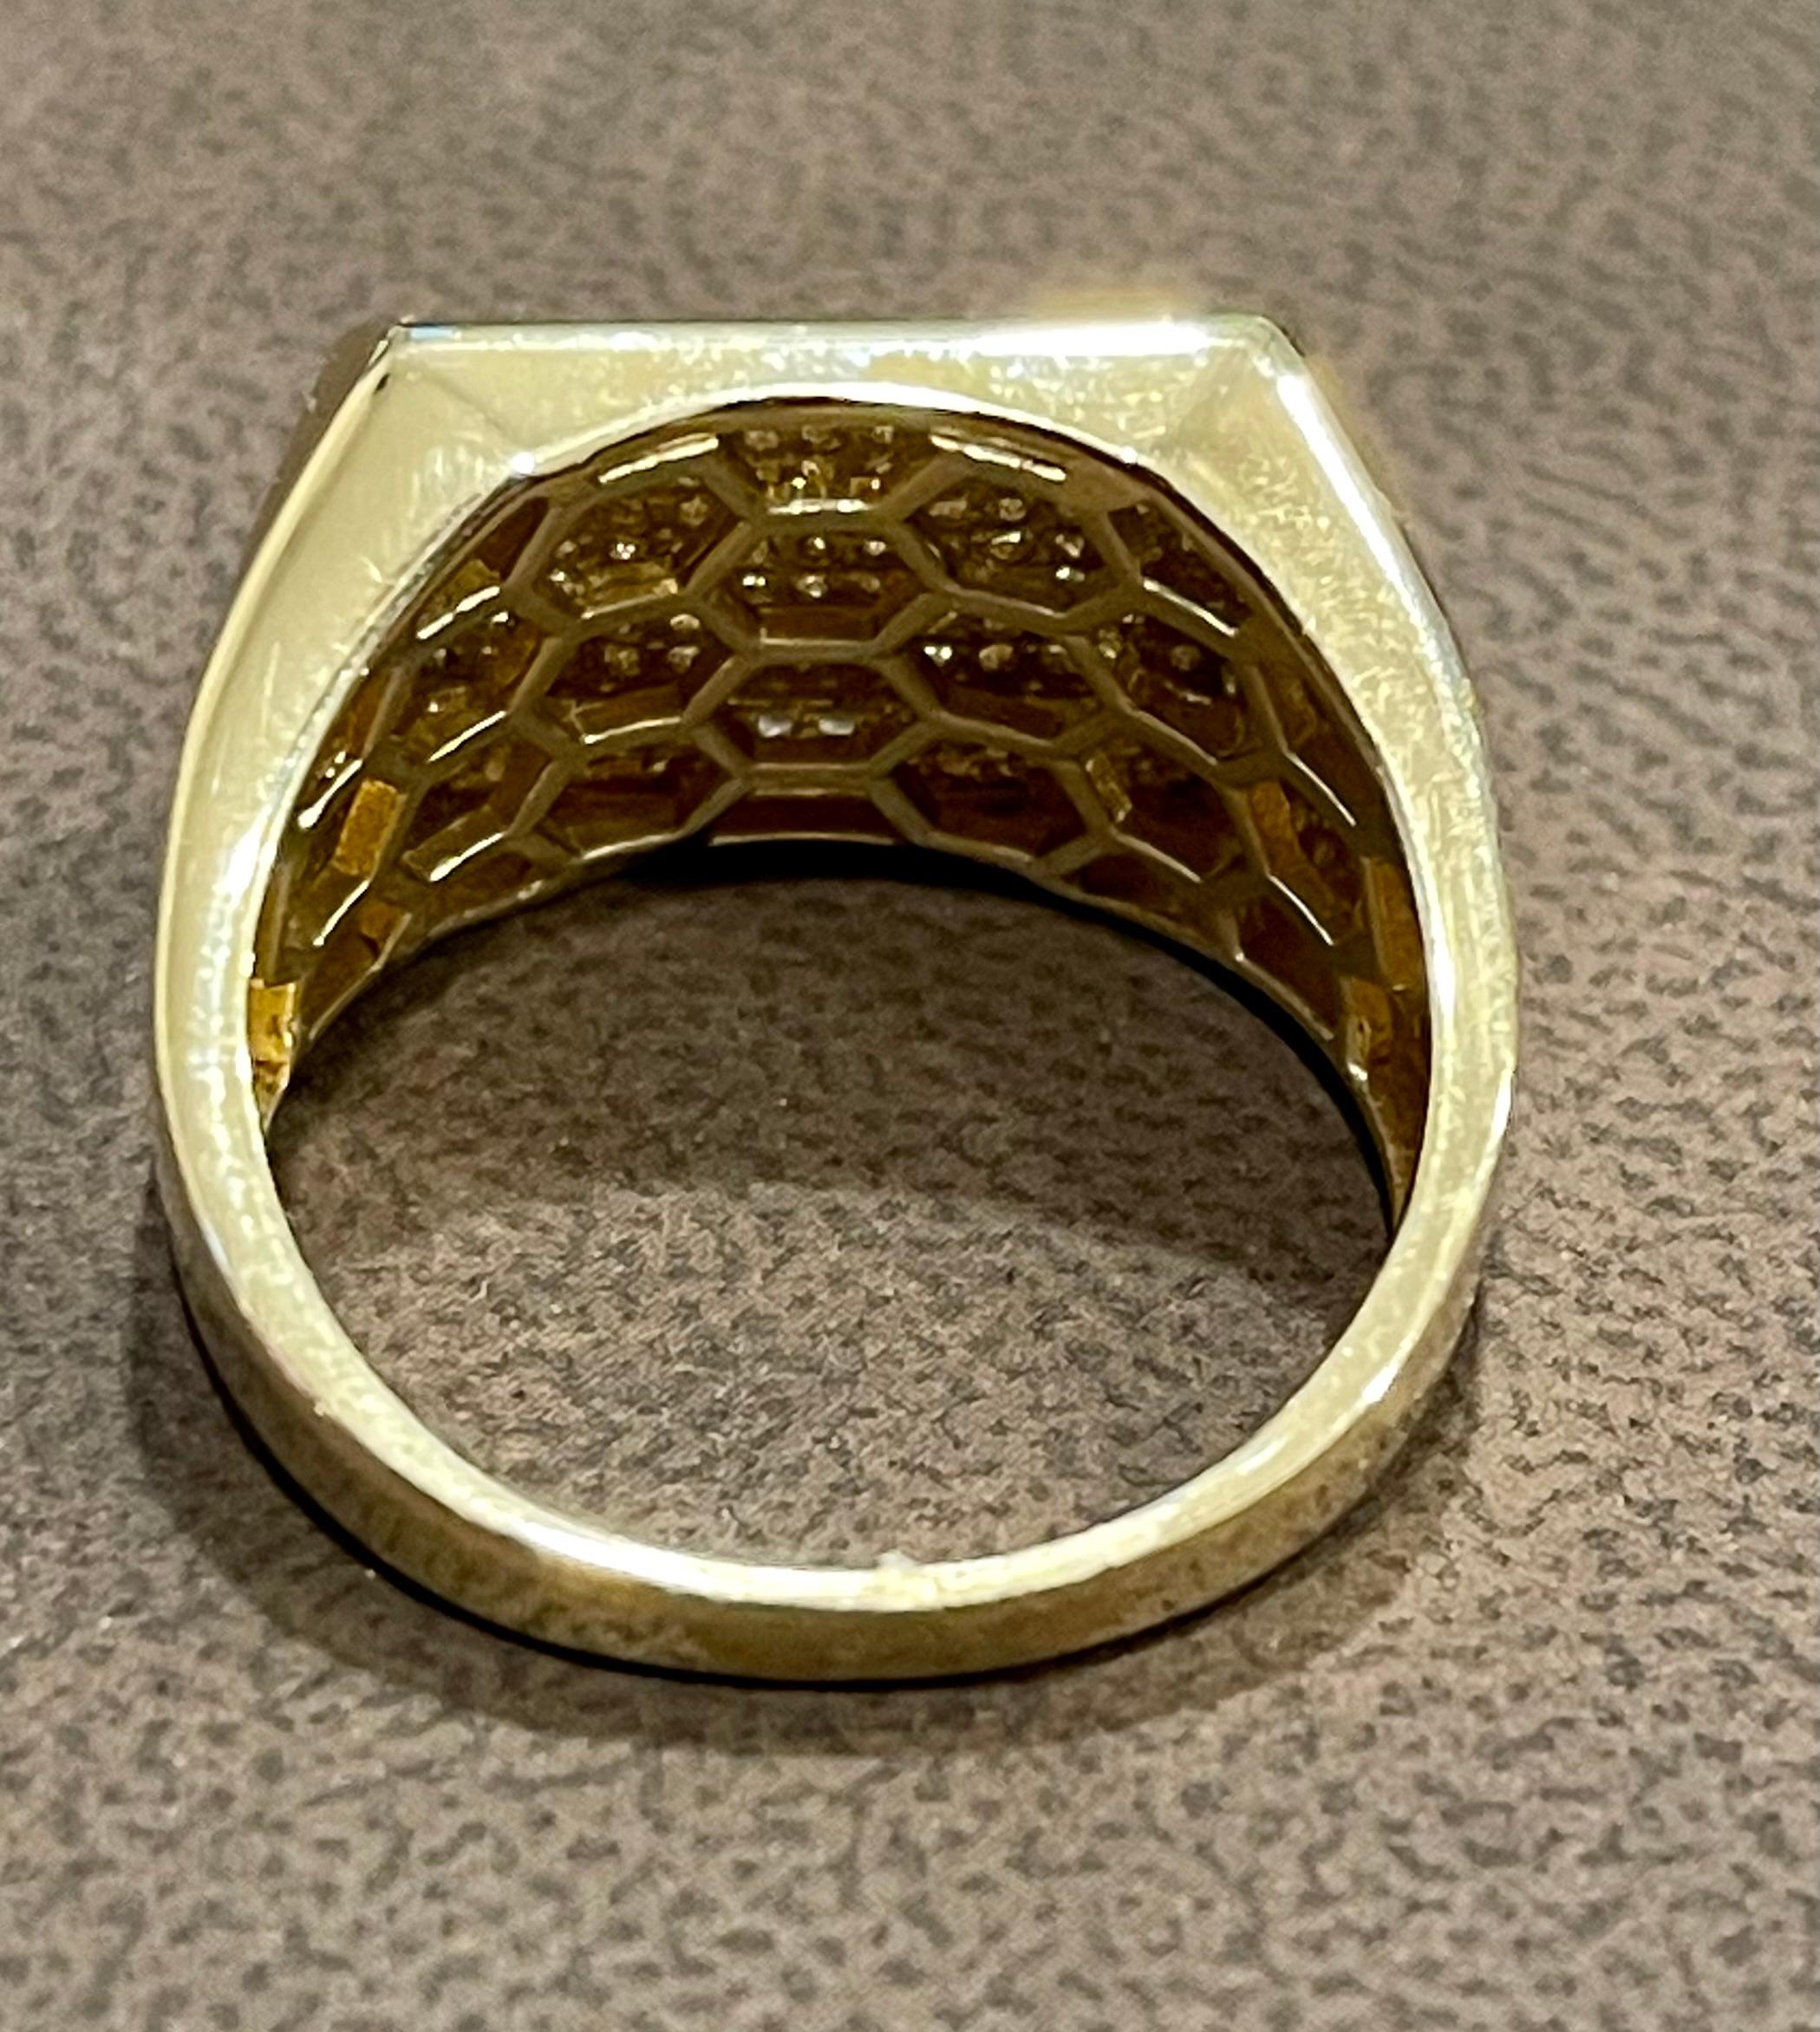 1.25 Carat Diamond Traditional Men's Ring 14 Kt Yellow Gold Ring Estate 6